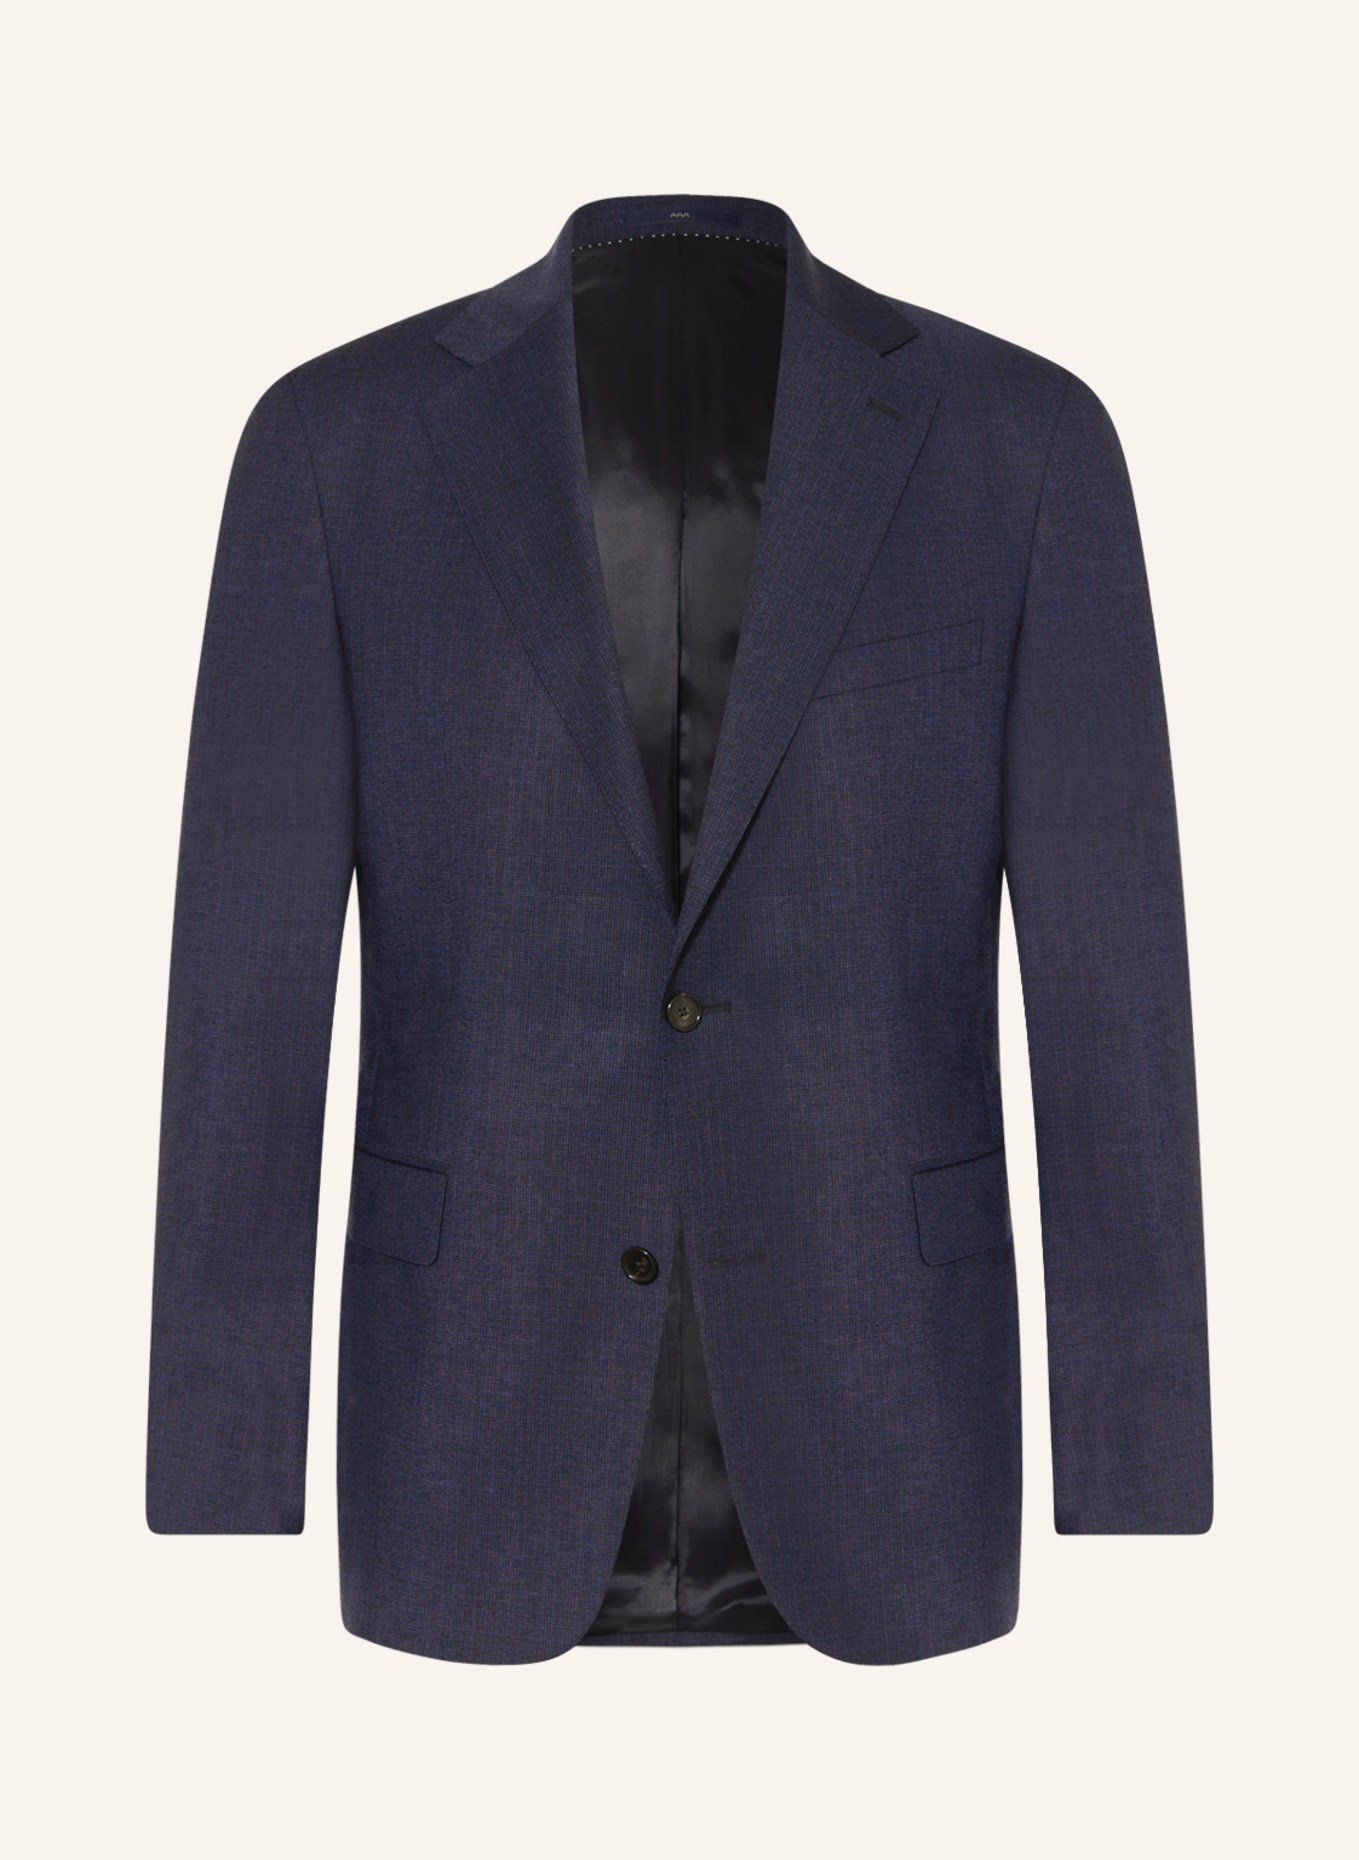 EDUARD DRESSLER Suit jacket comfort fit, Color: 047 DUNKELBLAU (Image 1)